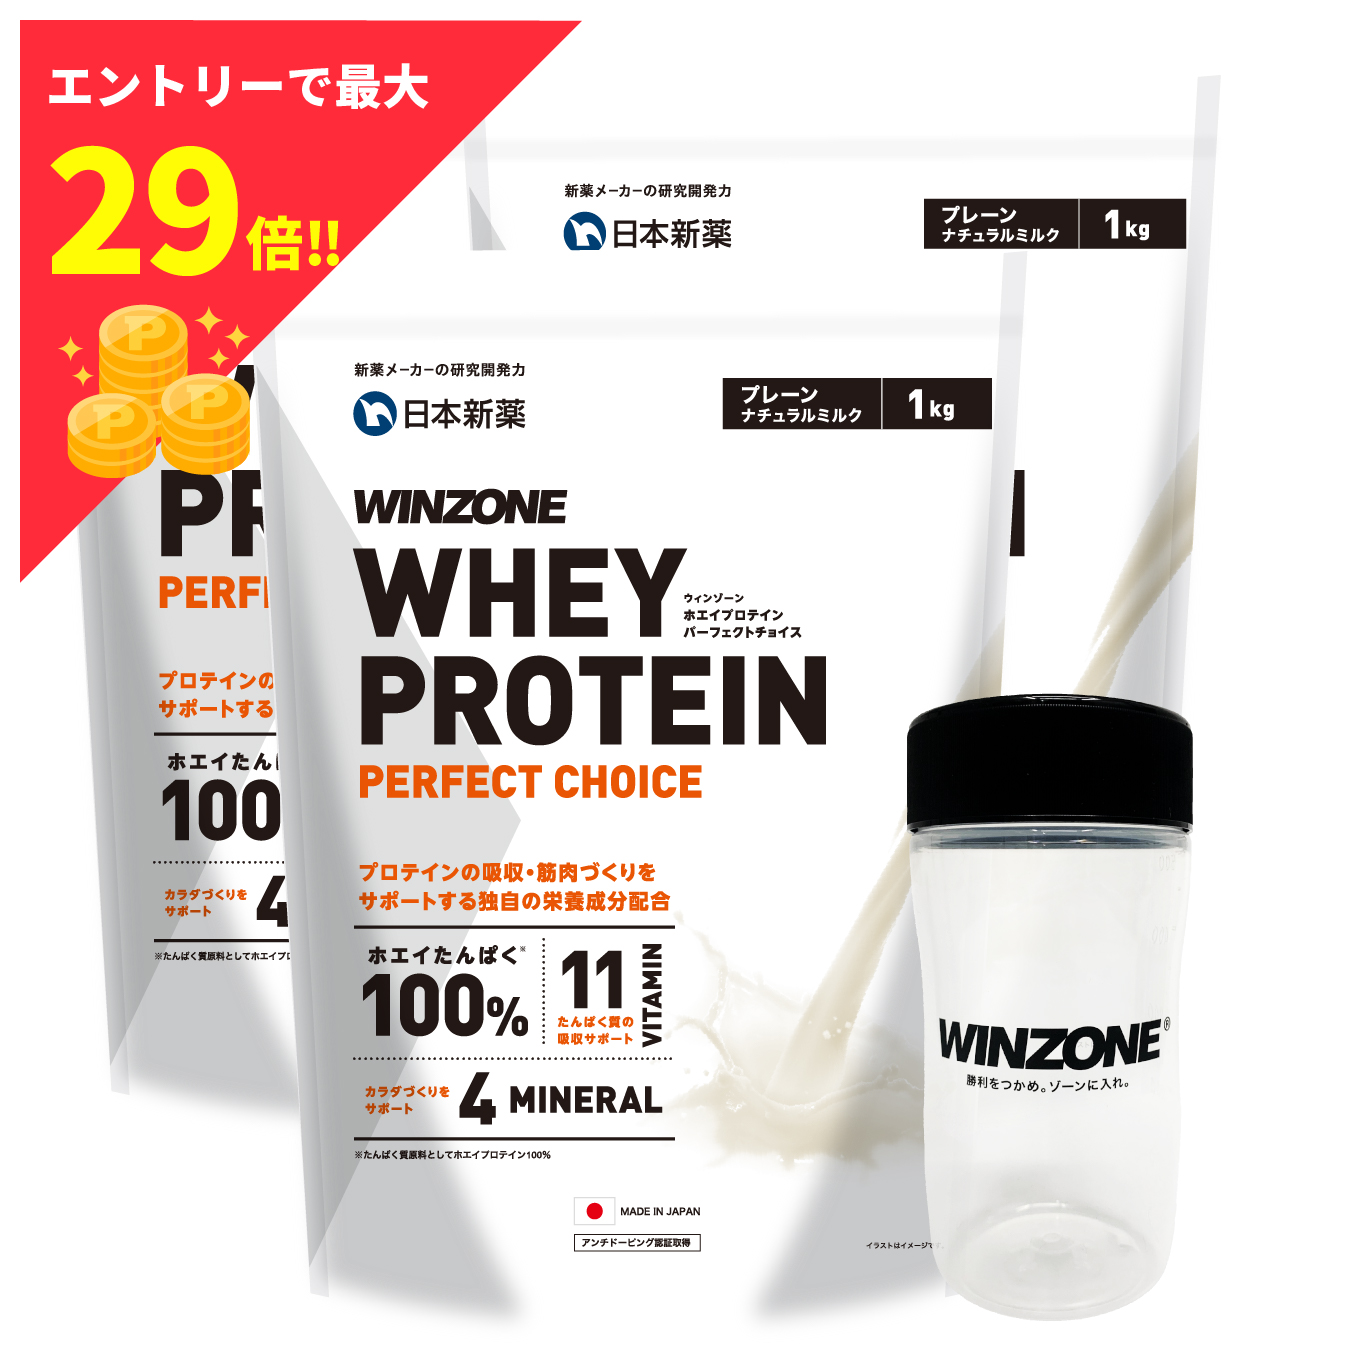 フルオーダー 日本新薬 WINZONE プロテイン1kgx3パック プレーン 未